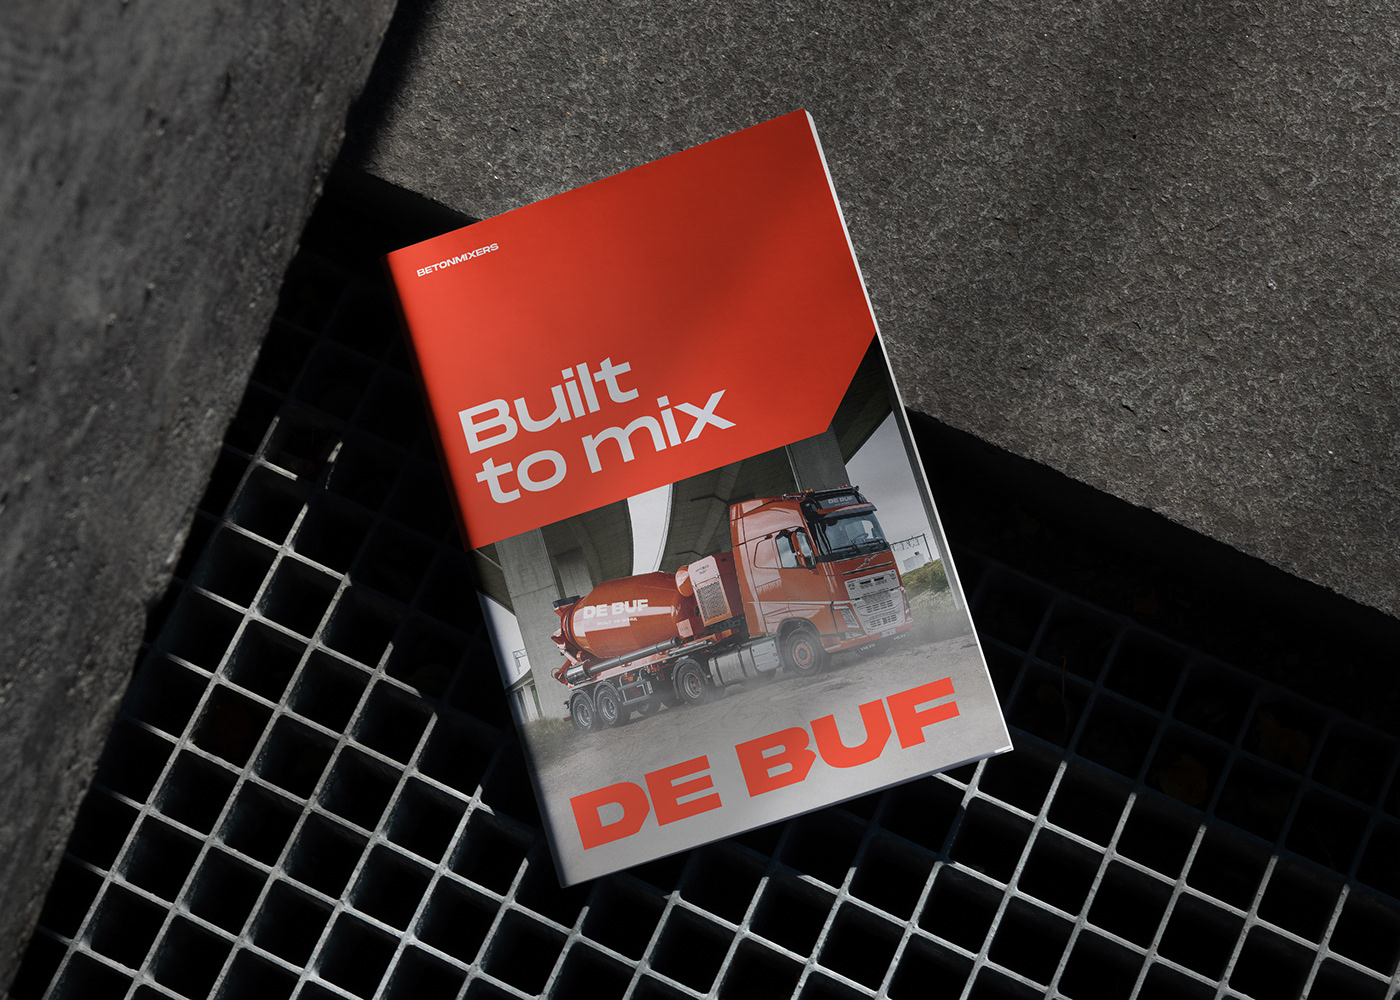 Magazine cover design for De Buf.